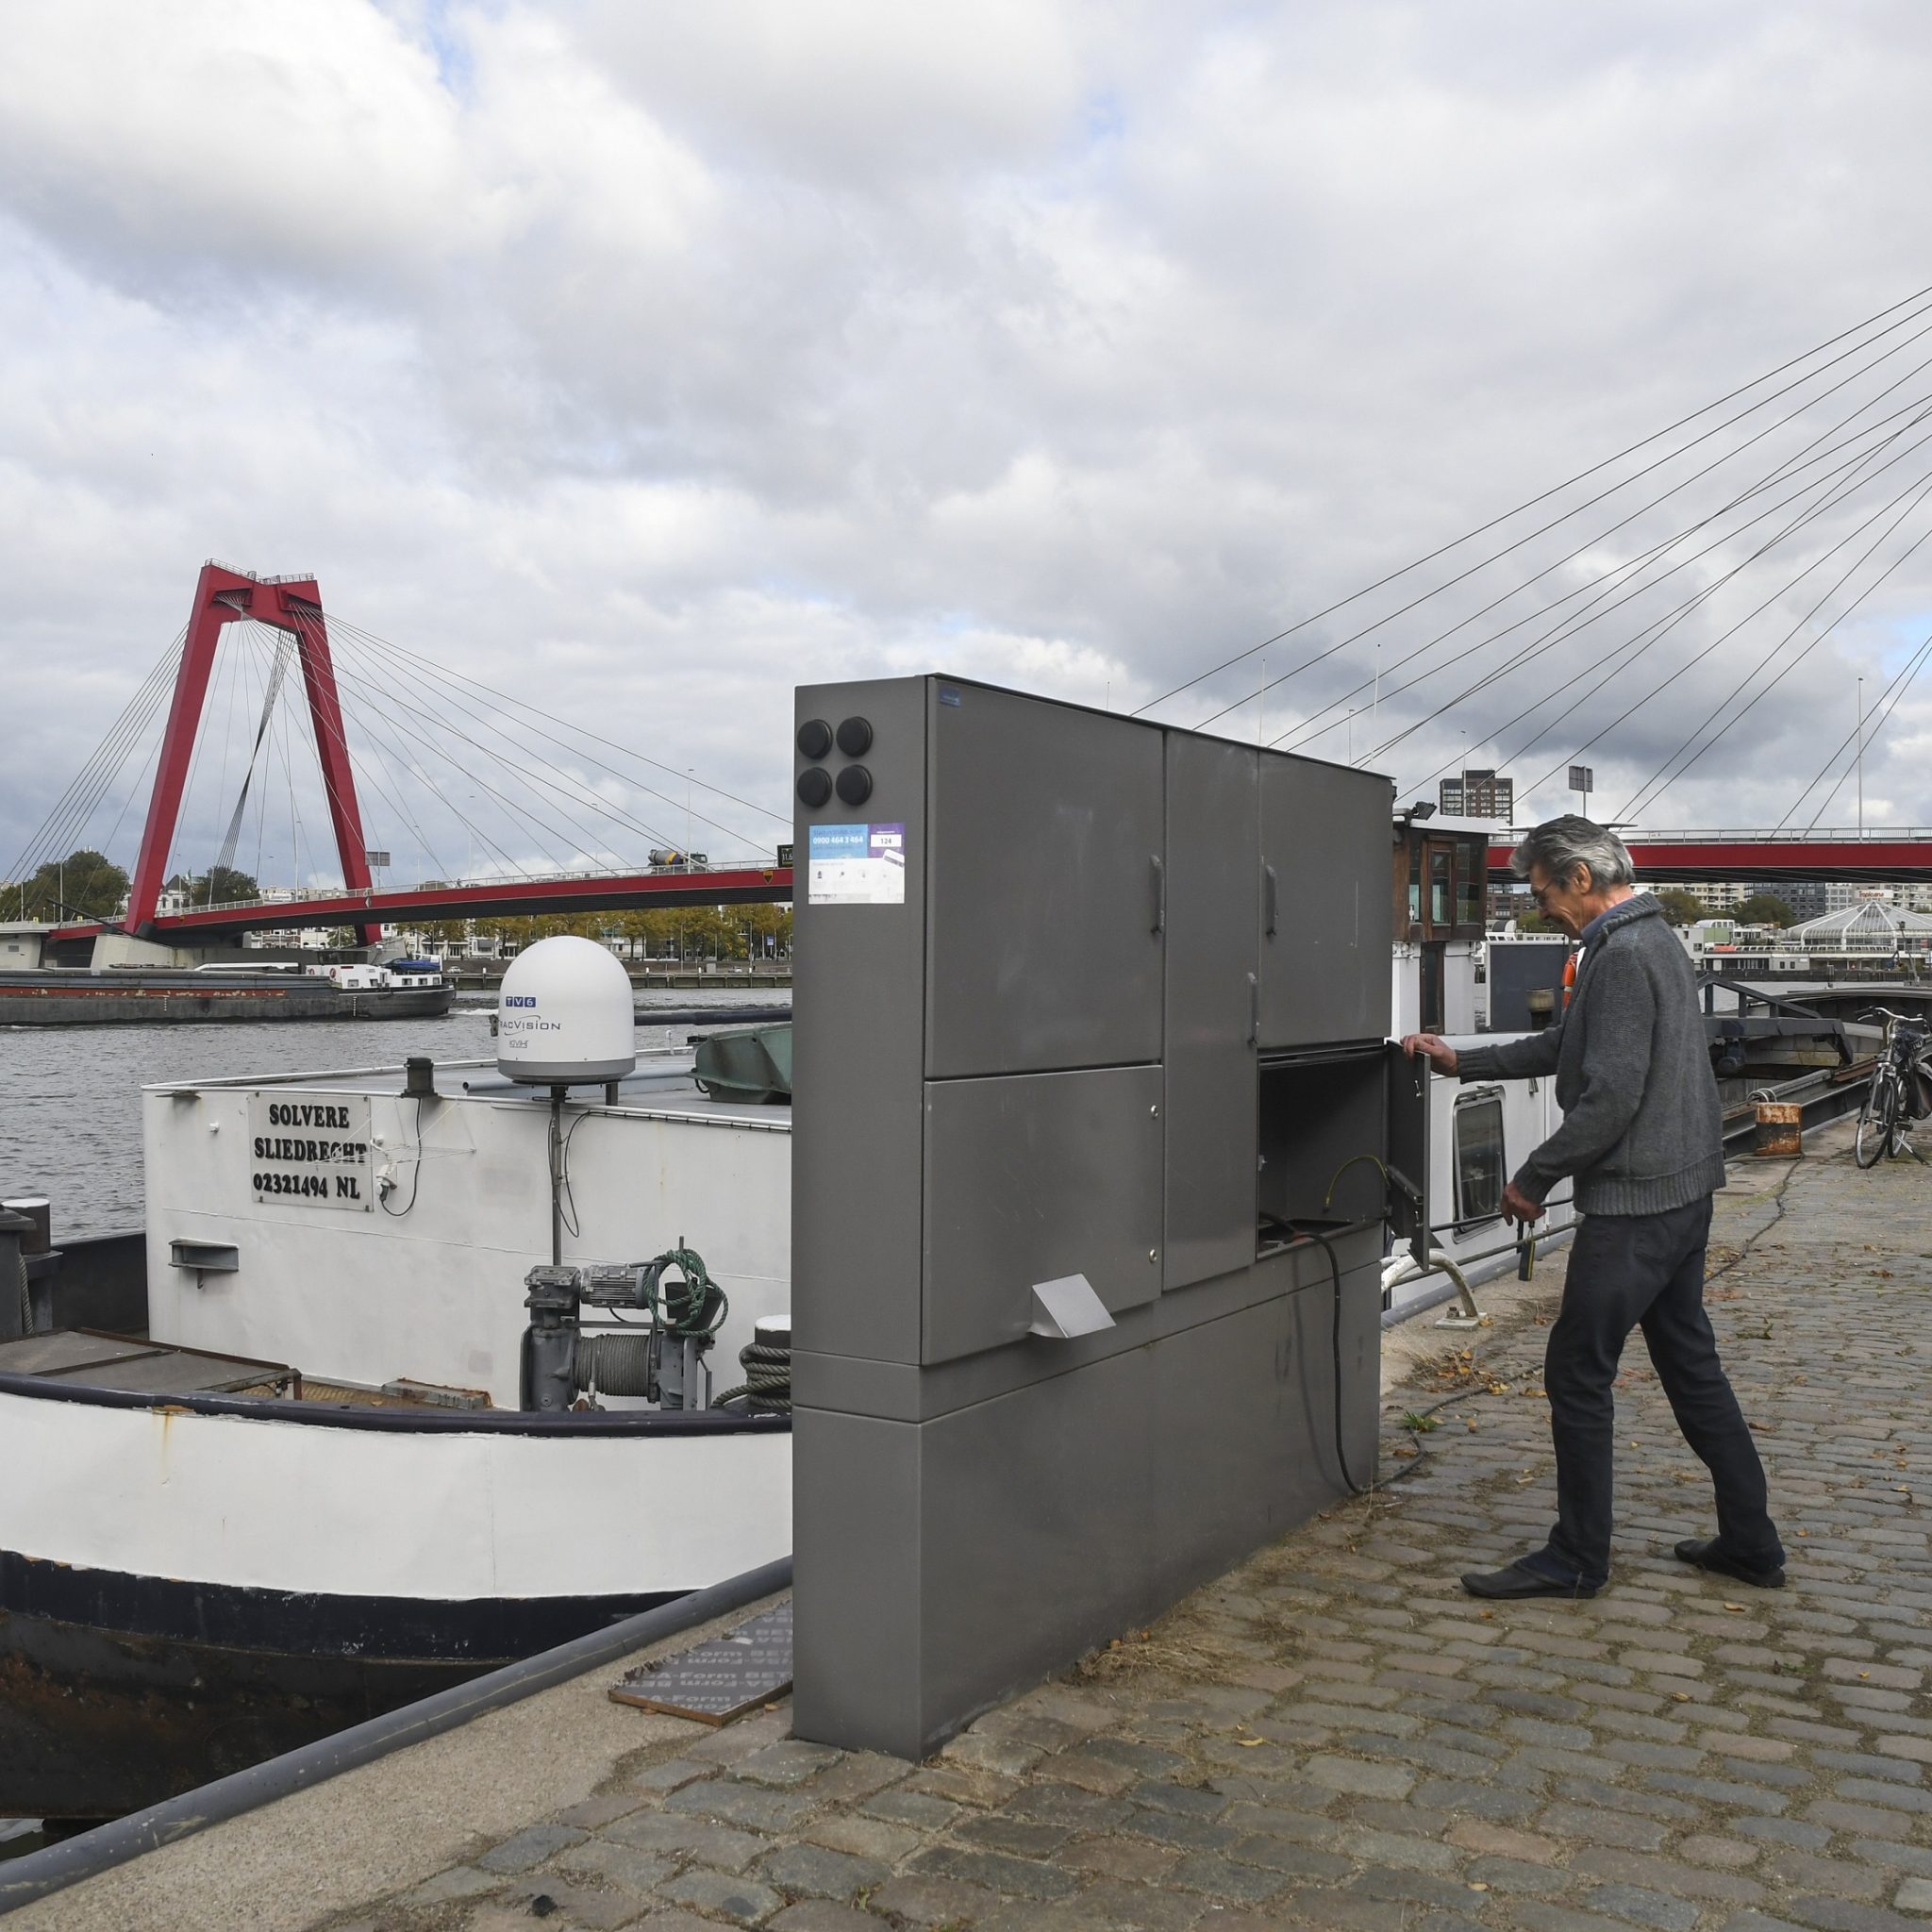 Er zijn tien kasten in de Rotterdamse haven die              niet meer werken door foutieve modems. (Foto Port of Rotterdam)